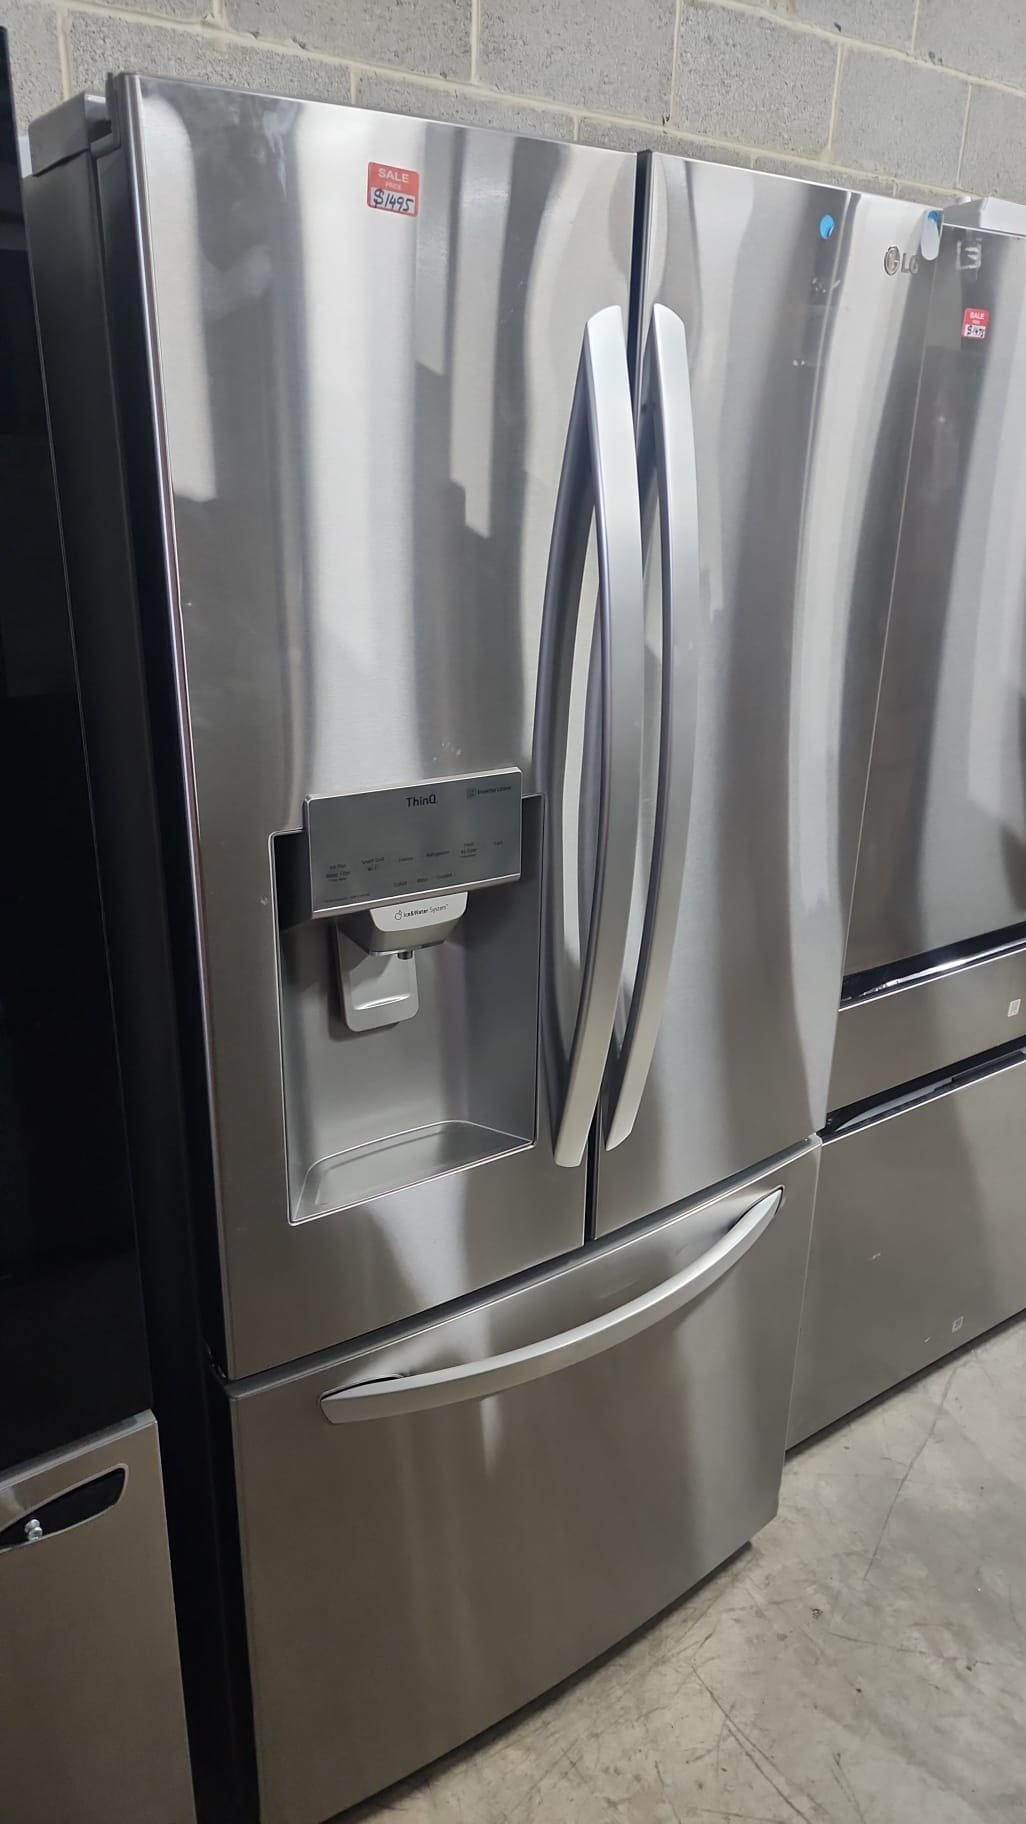 LG New Open Box 33″ Width 3 Door Frenchdoor Refrigerator – Stainless